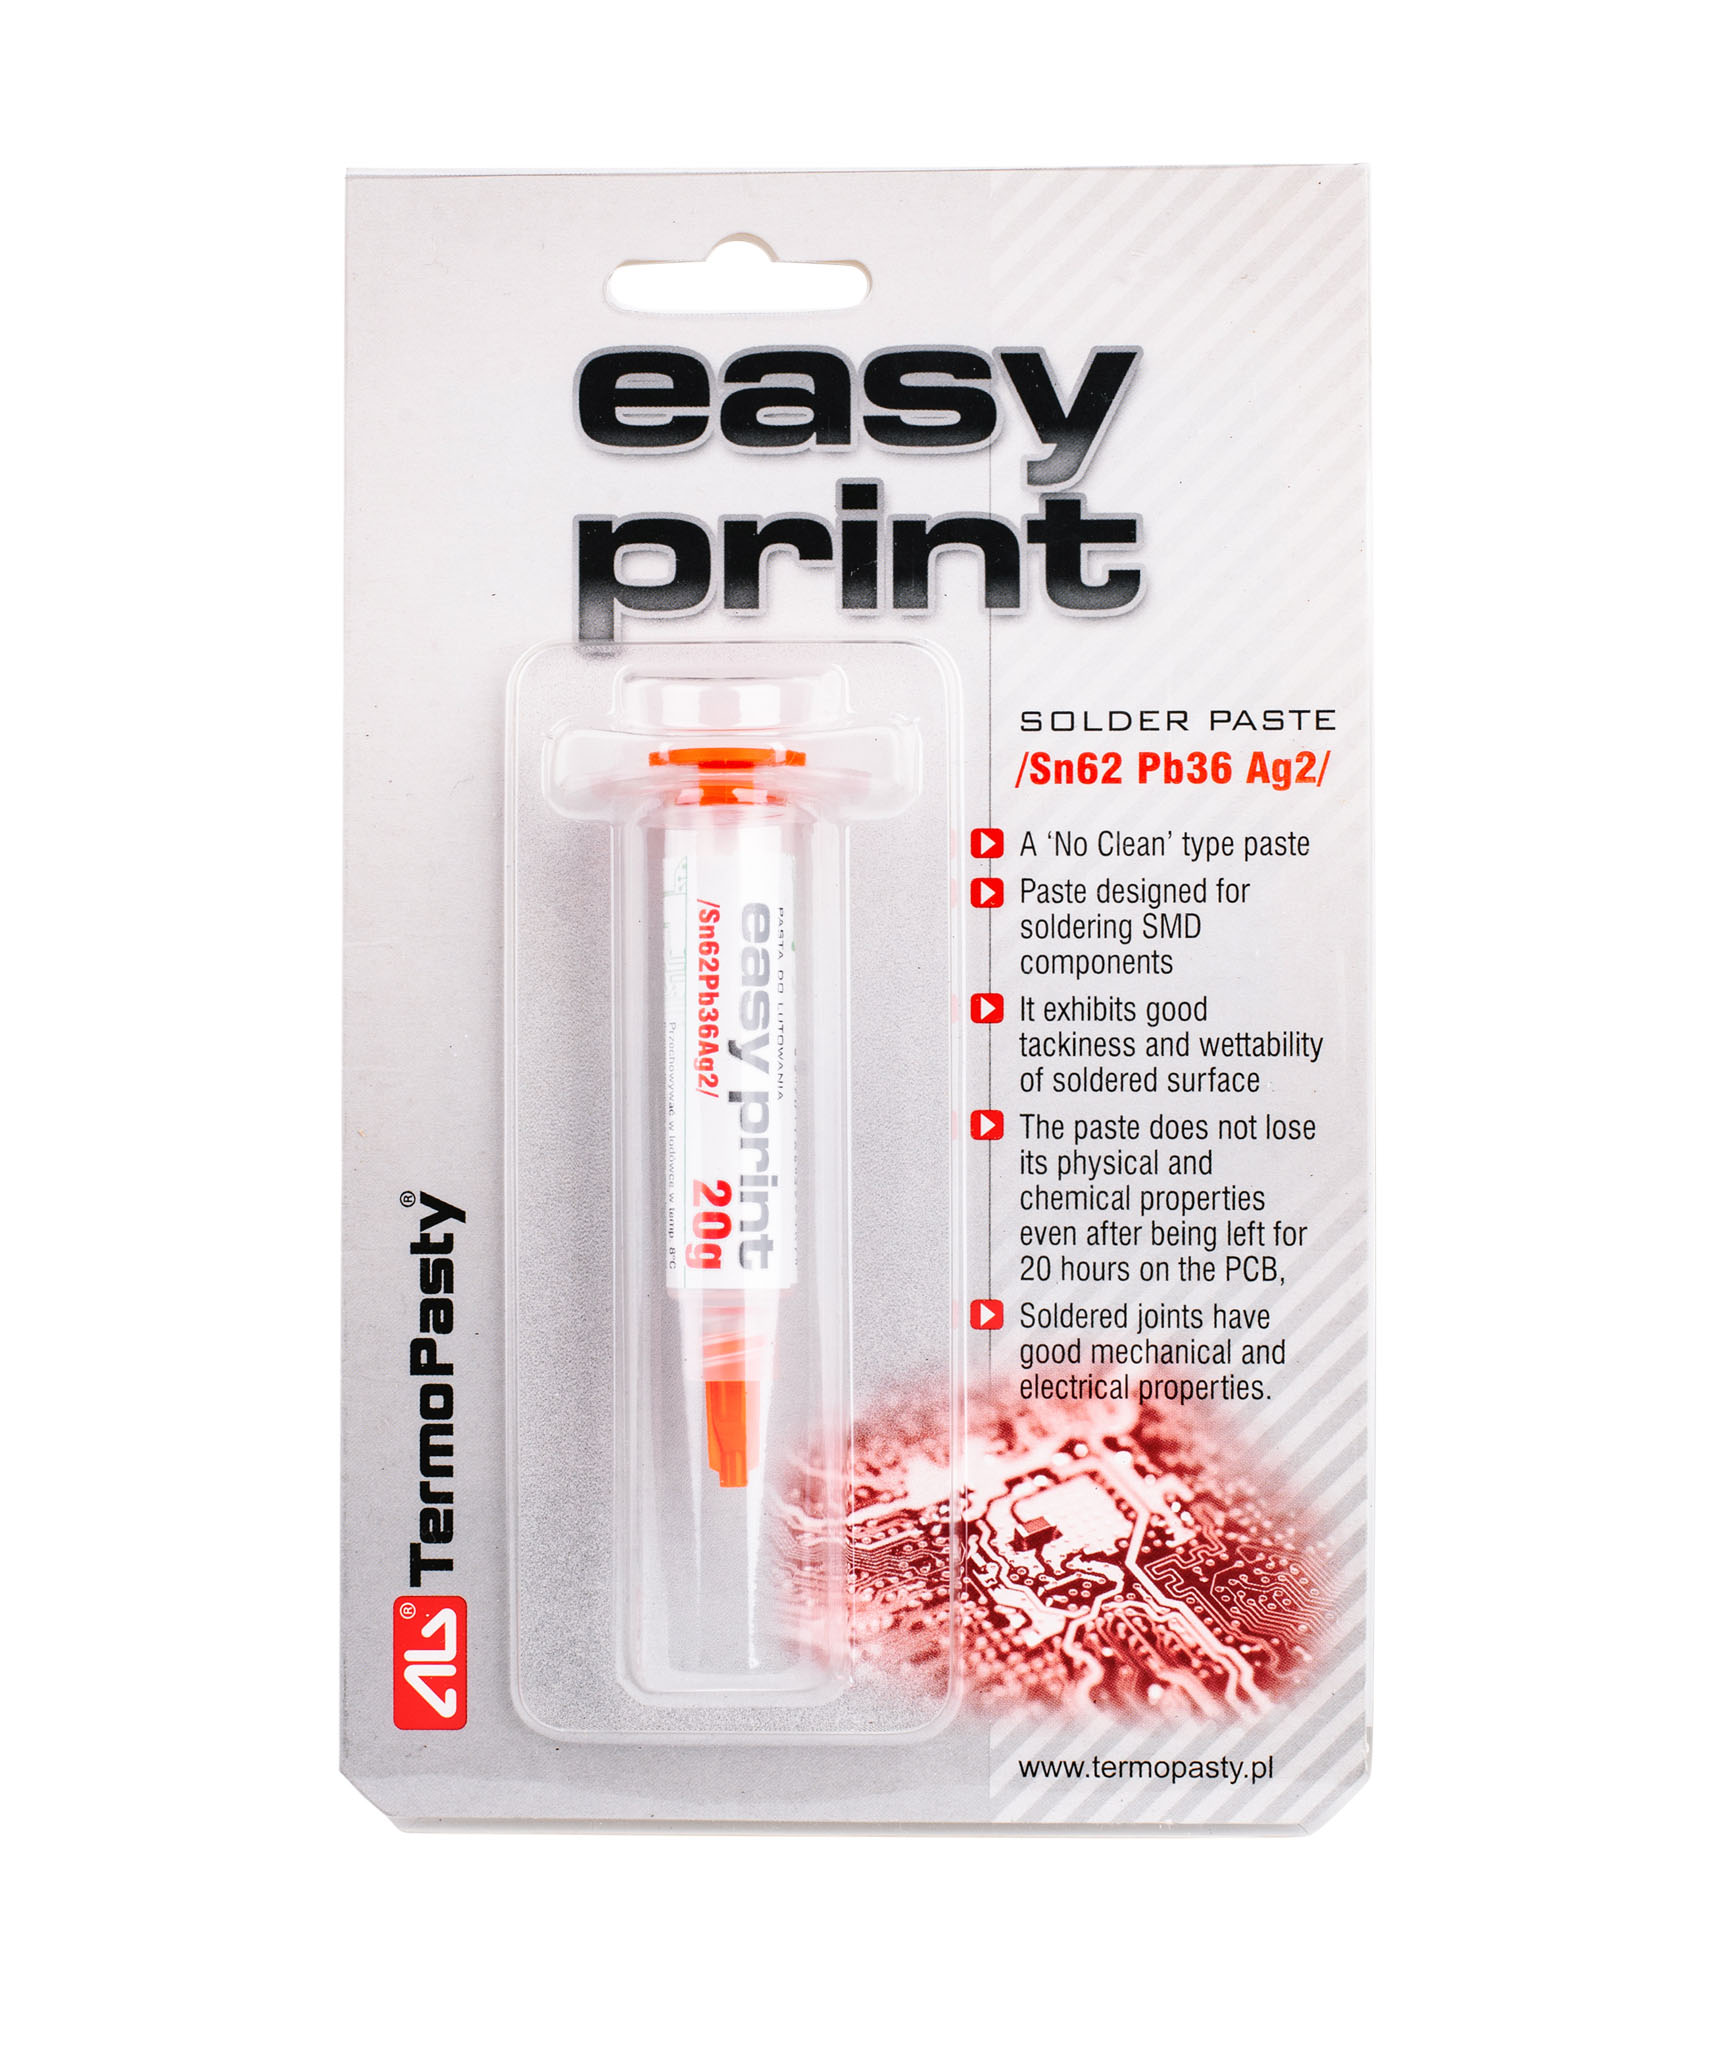 Opakowanie pasty lutowniczej Easy Print Sn62 Pb36 Ag2 1,4ml idealnej do montażu powierzchniowego SMD.